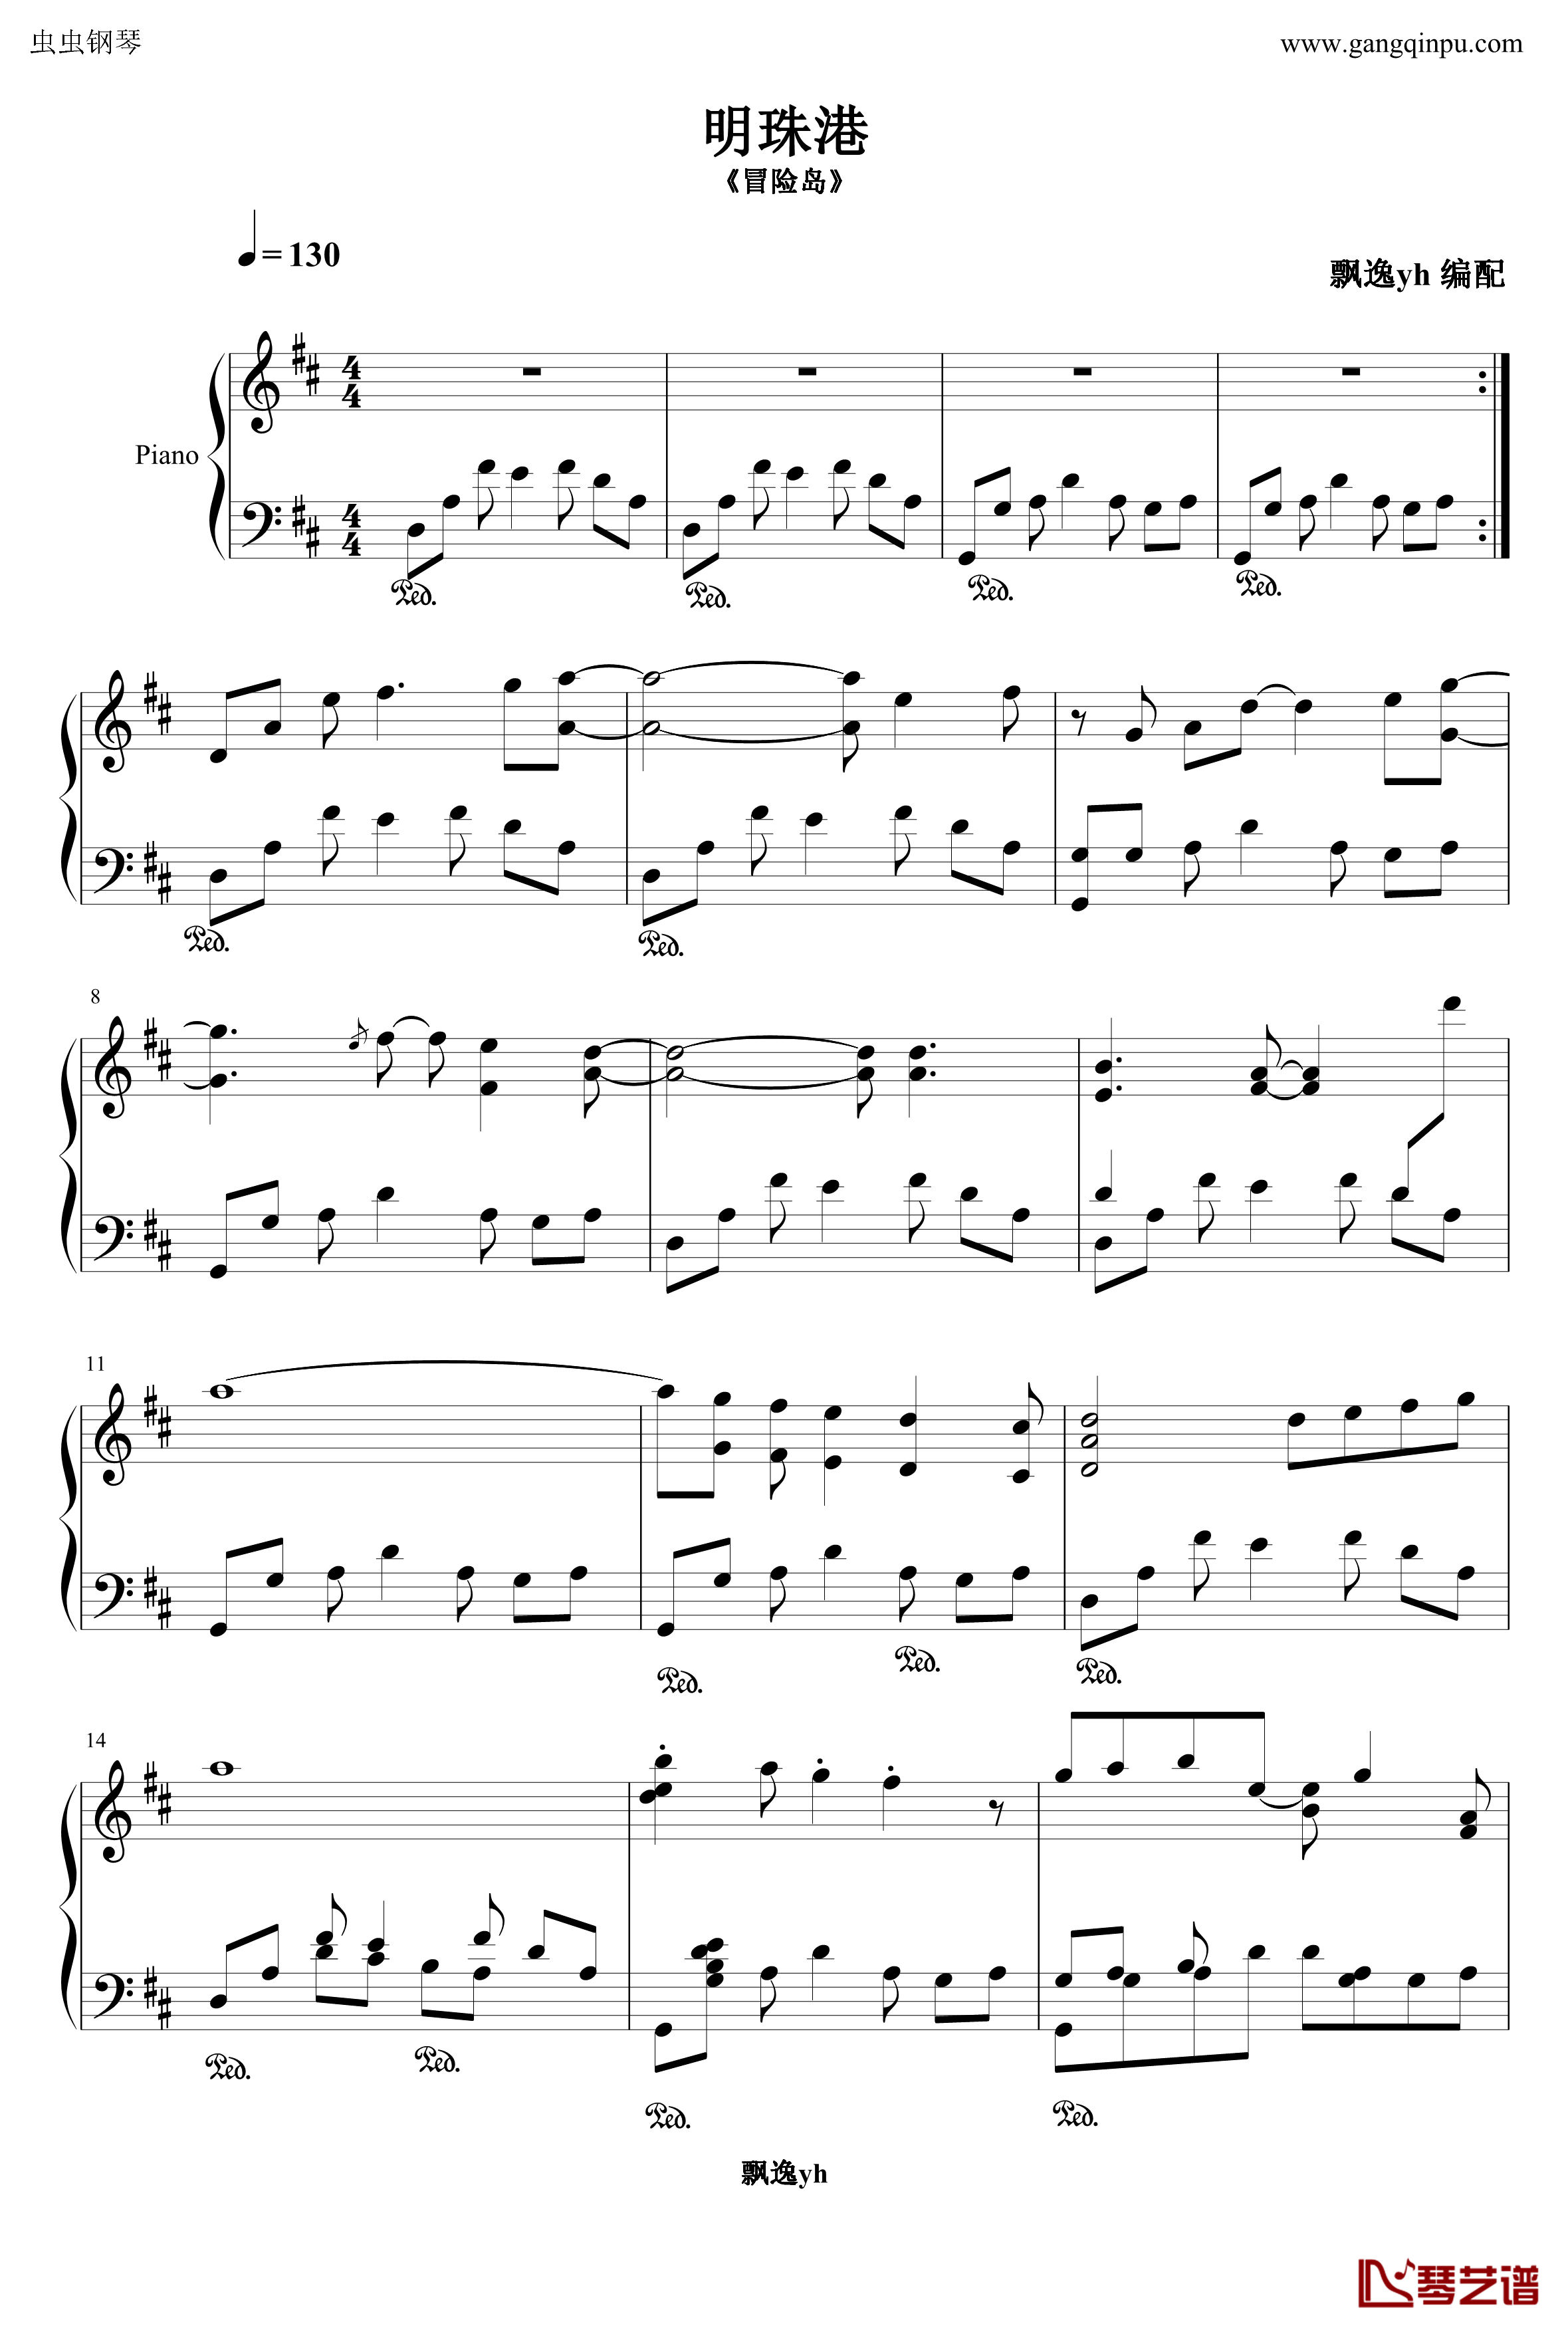 明珠港钢琴谱-完整版-冒险岛1